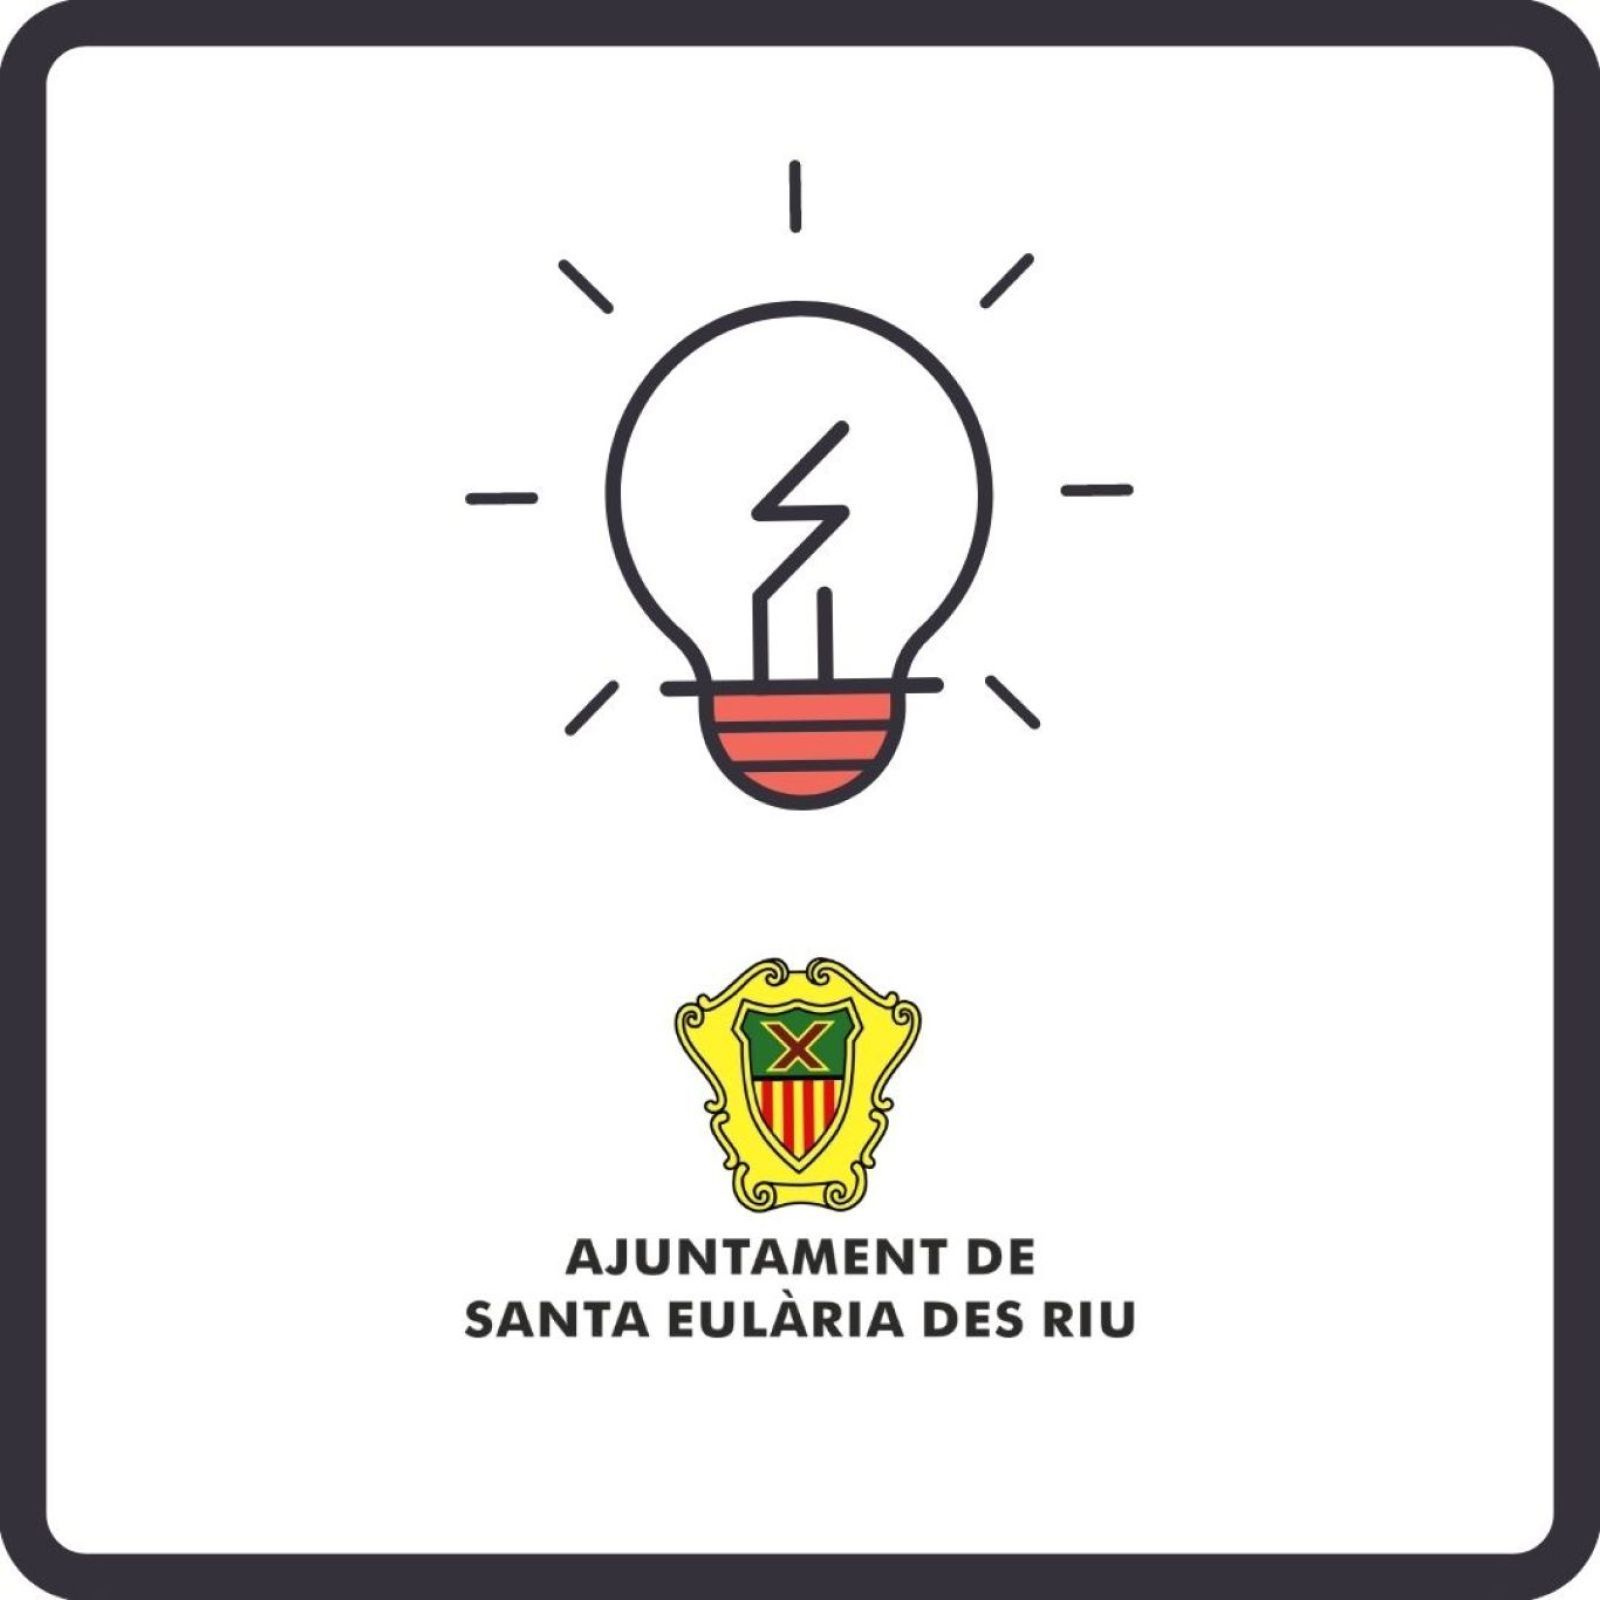 Corte temporal del suministro de energía eléctrica en diferentes zonas de Santa Eulària des Riu los días 22, 23, 24 de marzo